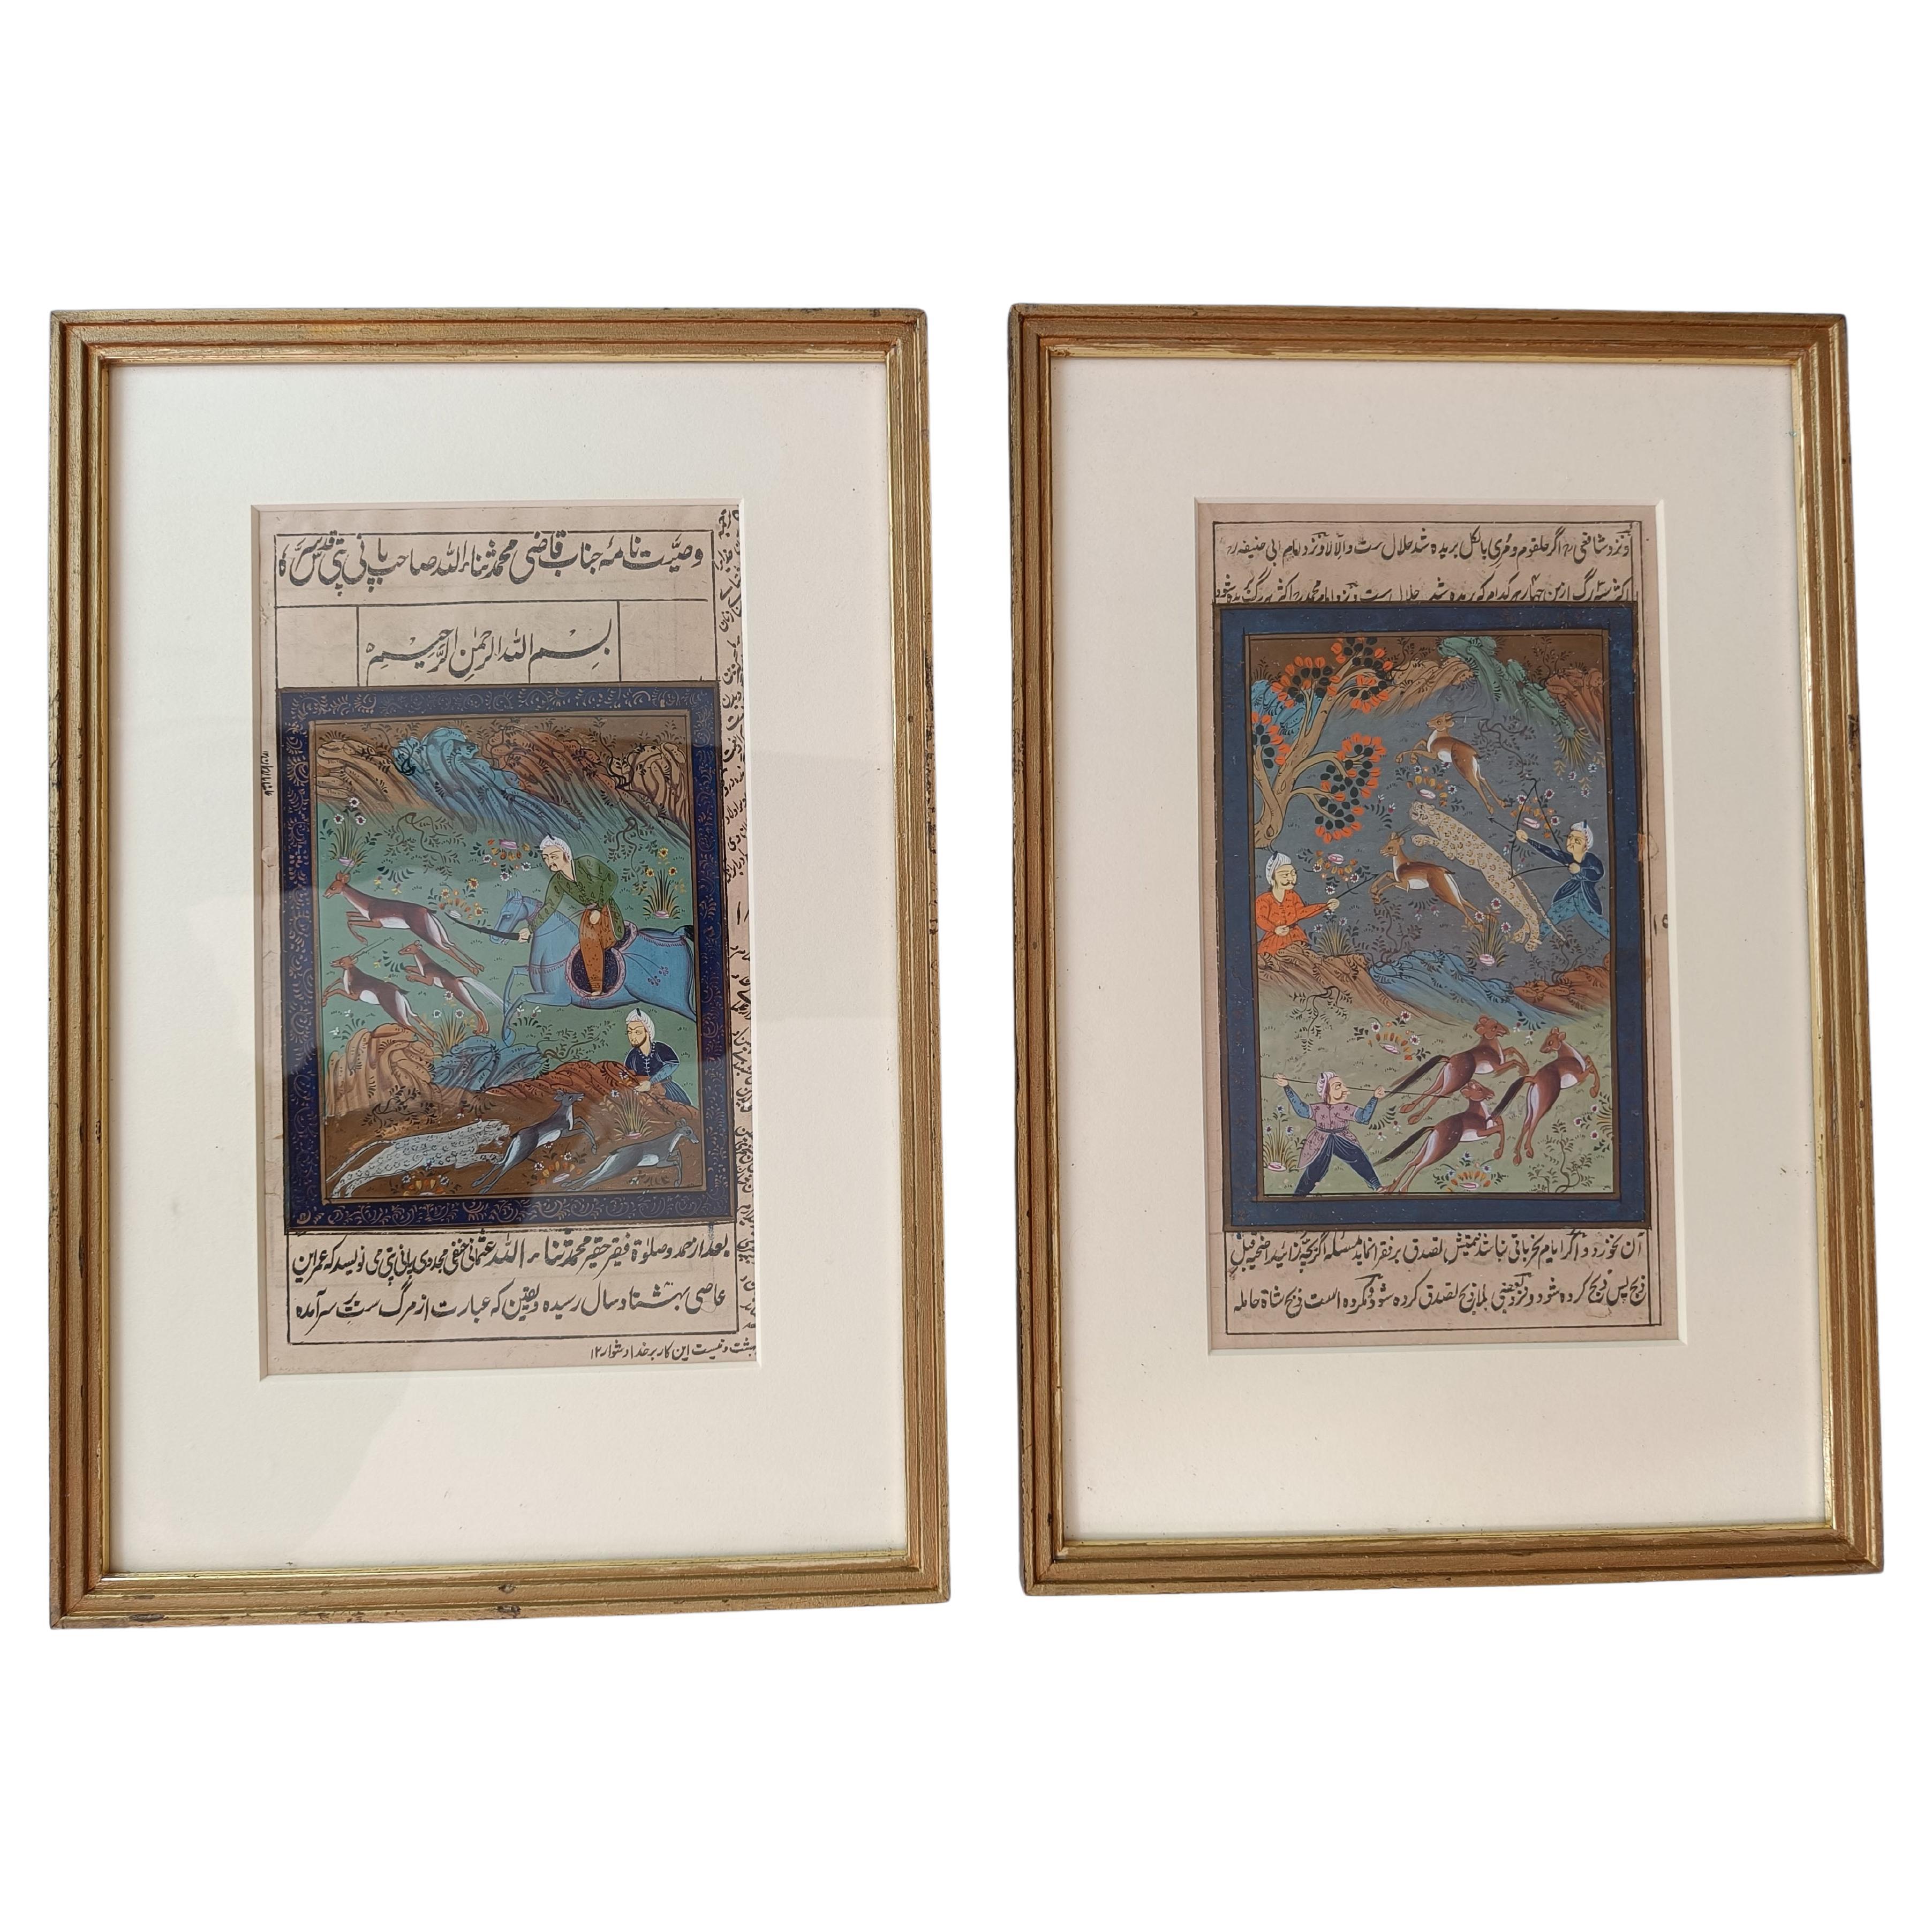 Schön gerahmtes Paar Indo-Persische Mughal-Gemälde im Mughal-Stil, Inneneinrichtung, Vintage